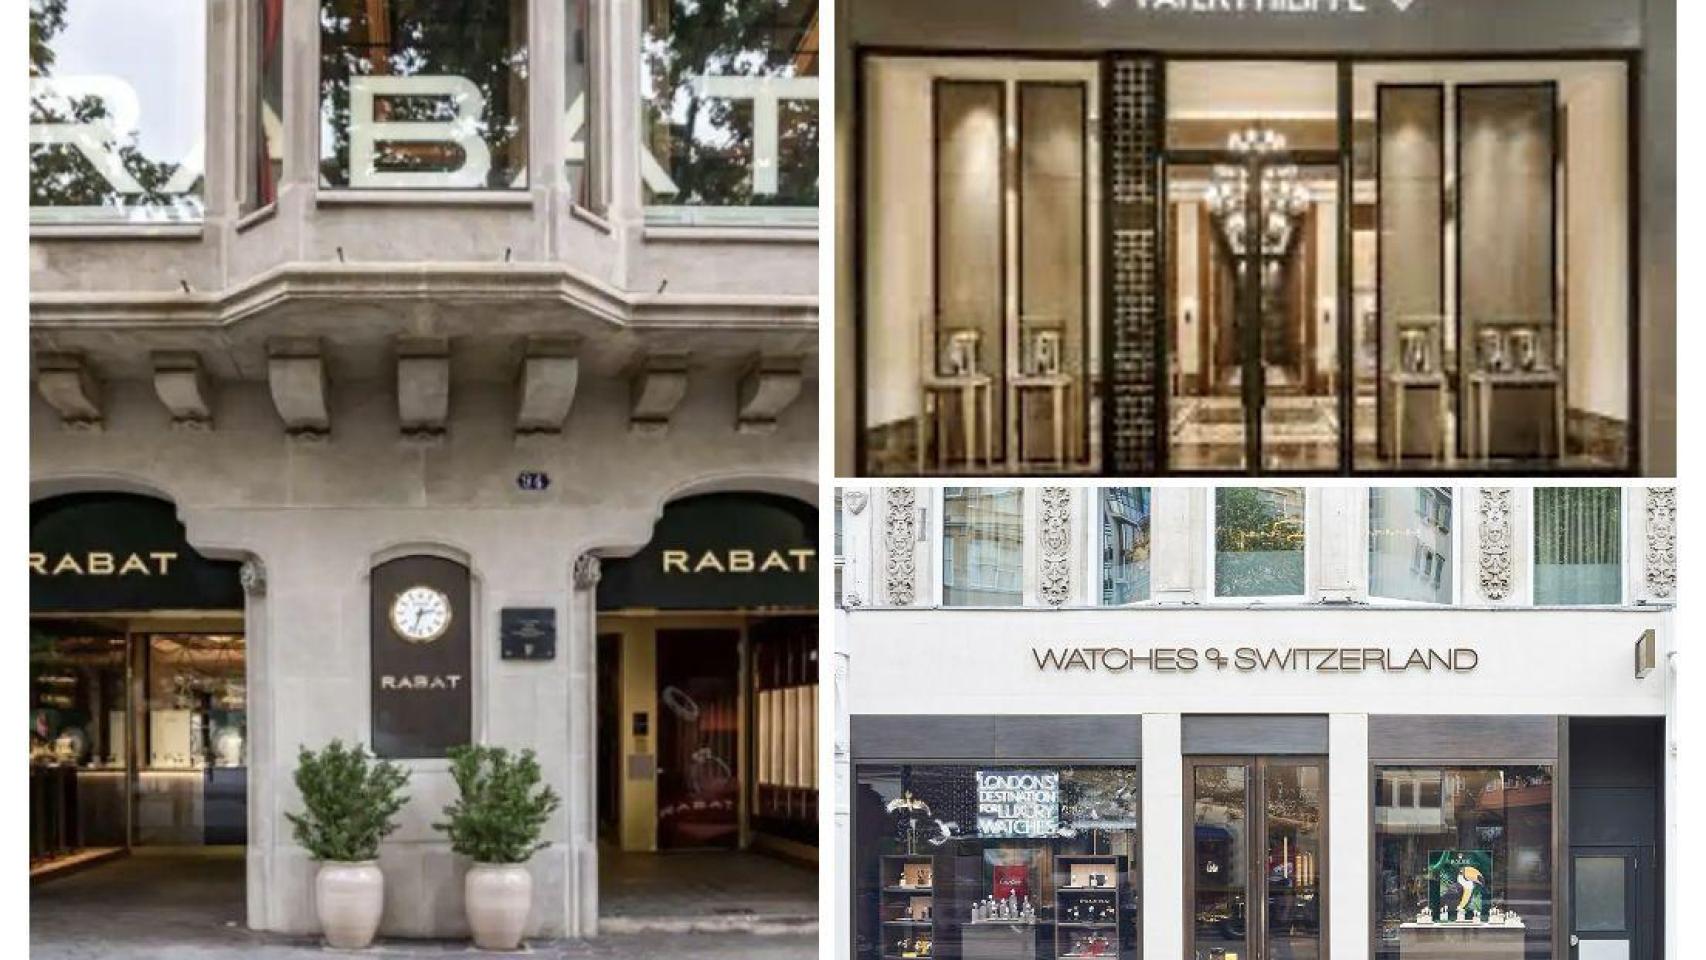 Tiendas de las marcas Rabat, Patek Philippe y Watches of Switzerland, en un fotomontaje